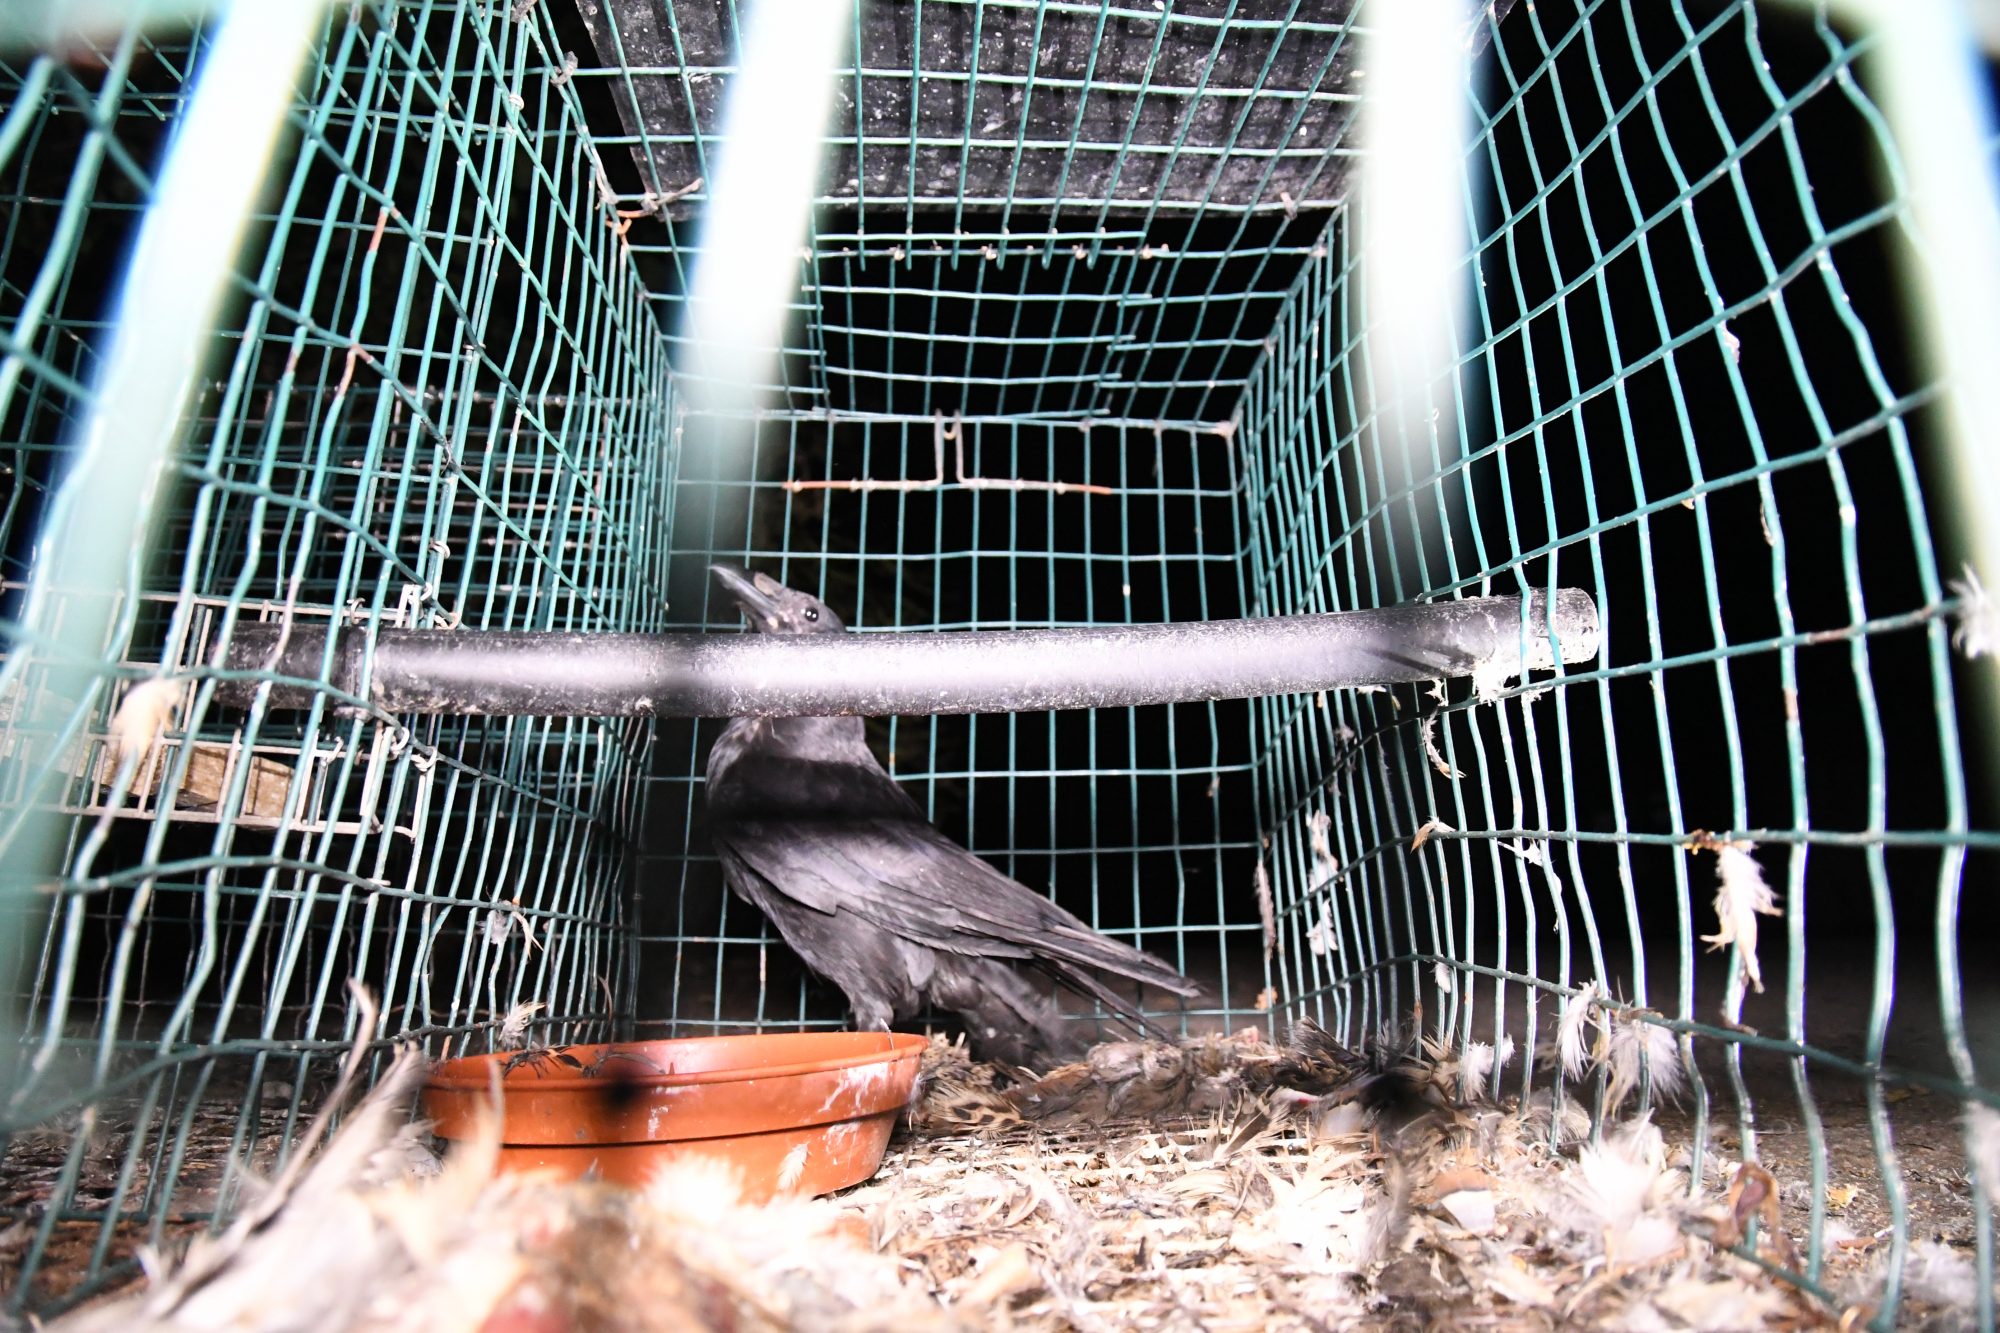 Magpie Flocked Decoy Larsen Trap Bird Decoying Shooting Fake Bird with Peg 